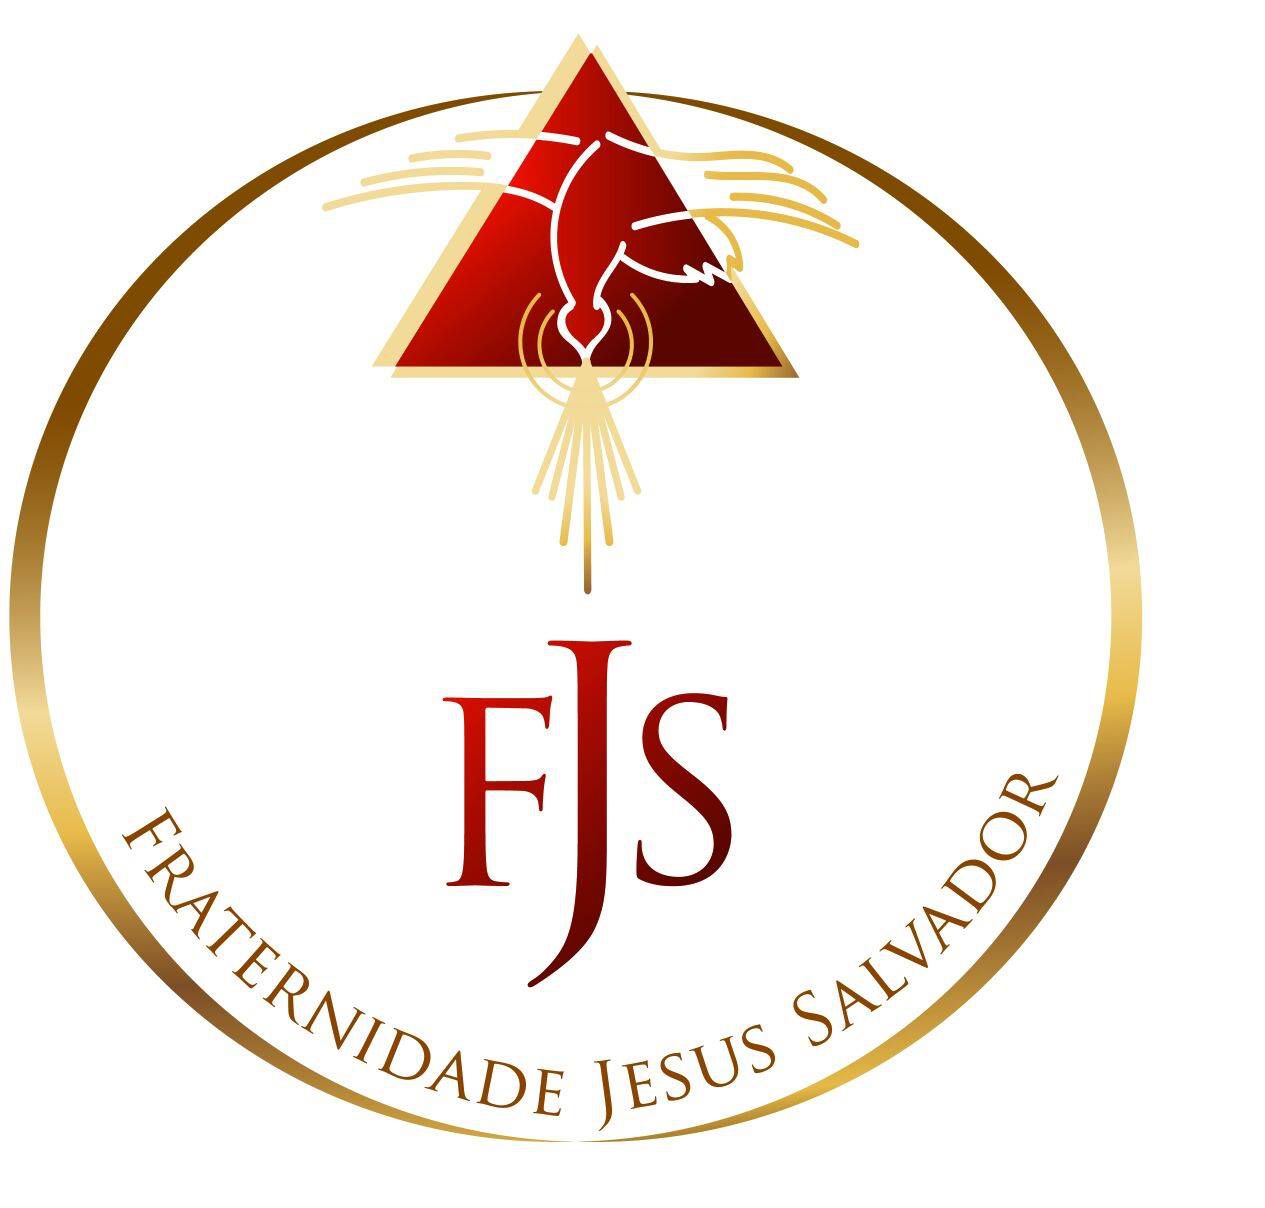 Fraternidade Jesus Salvador - Salvistas